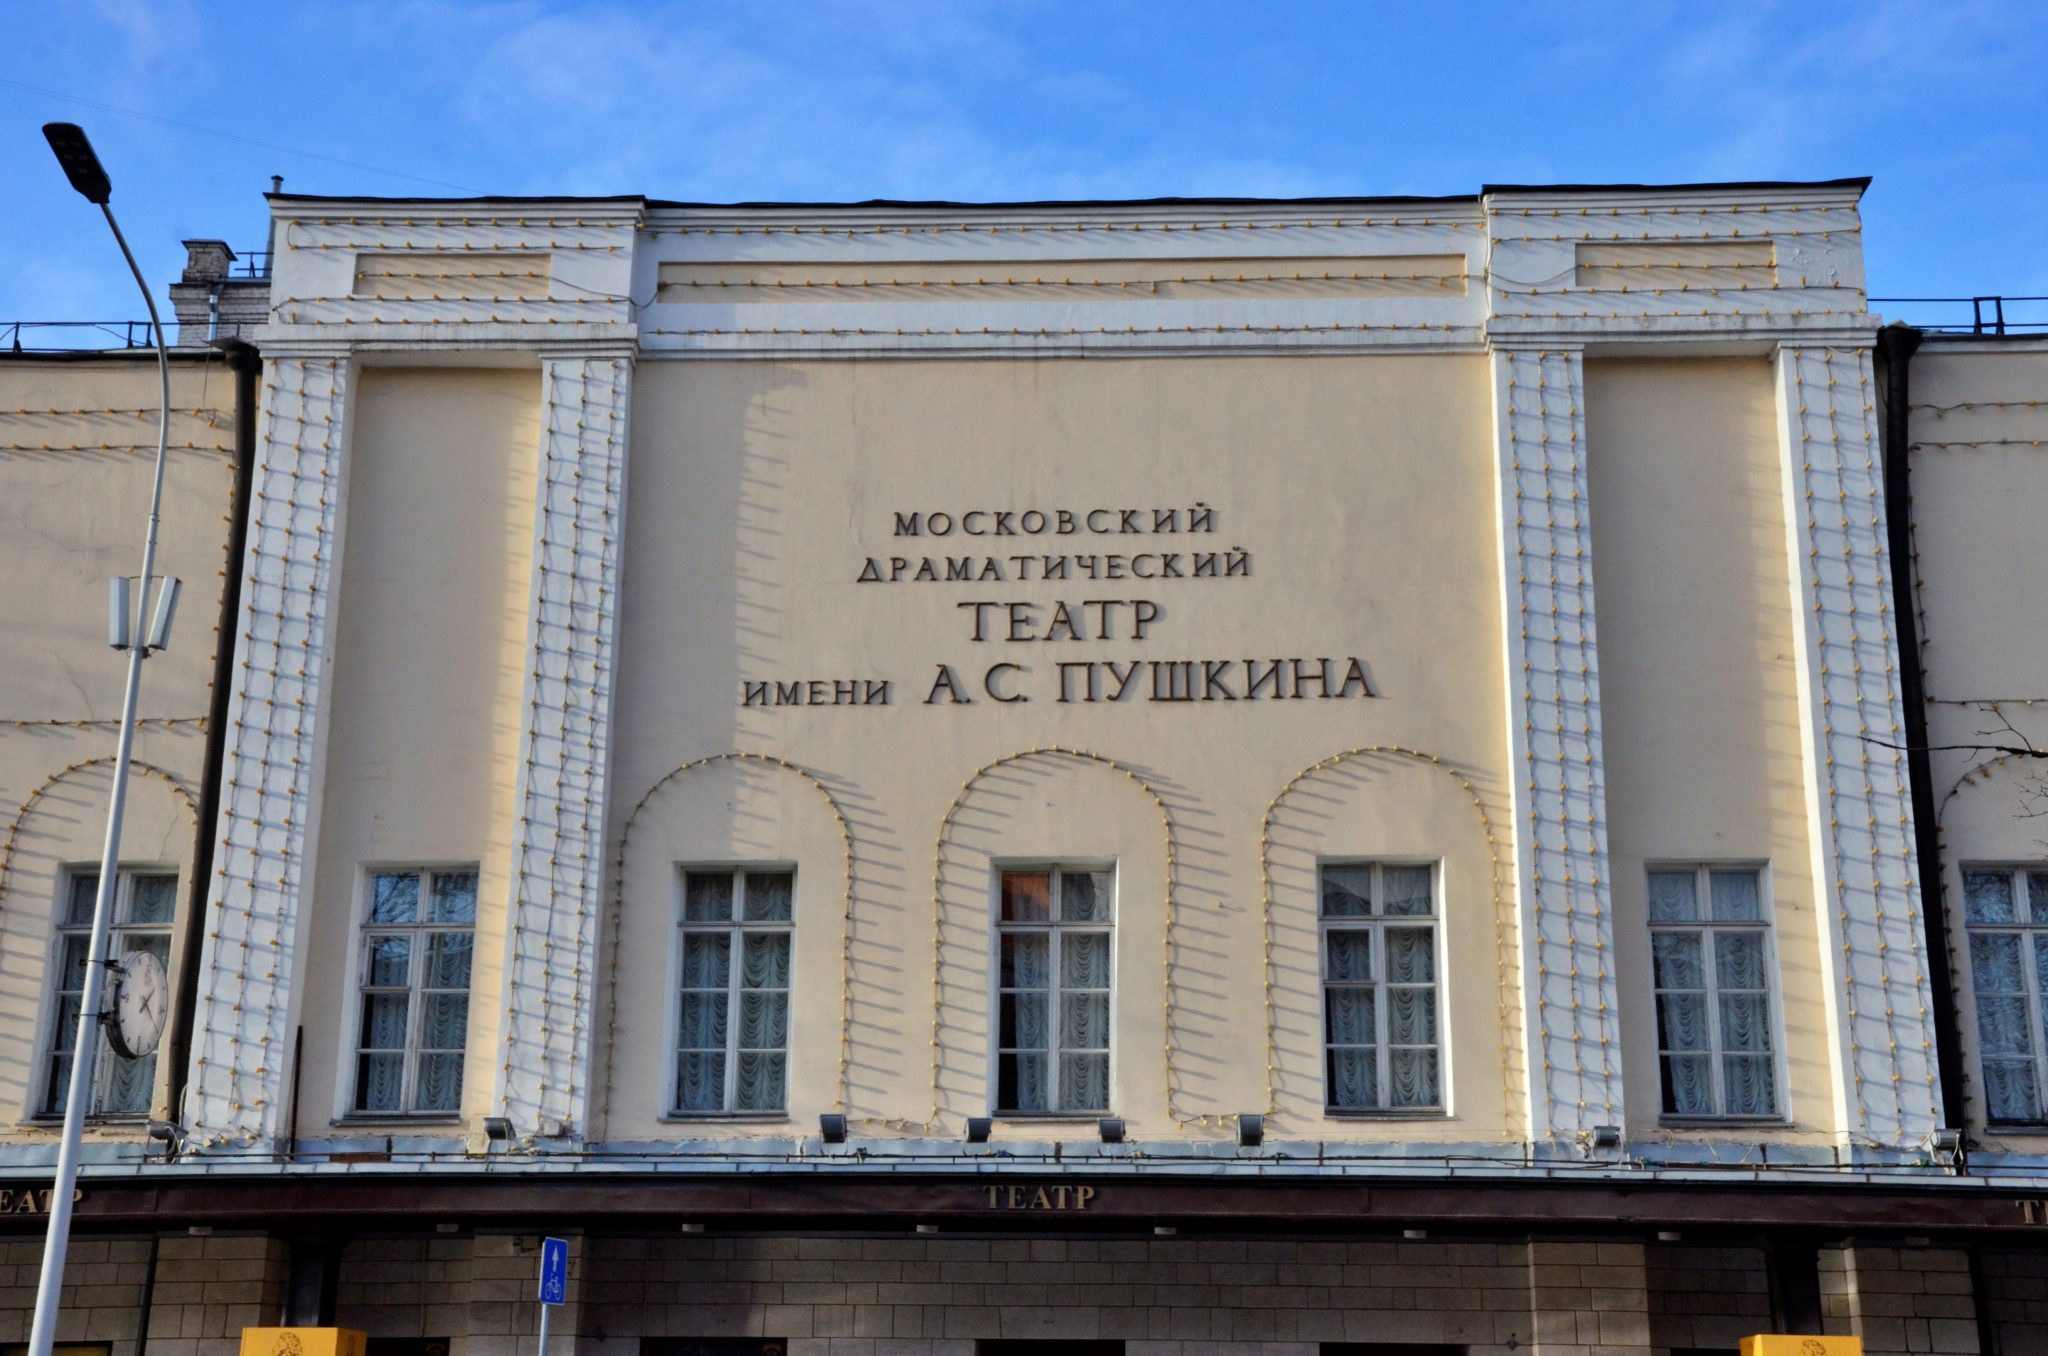 пушкин о театре